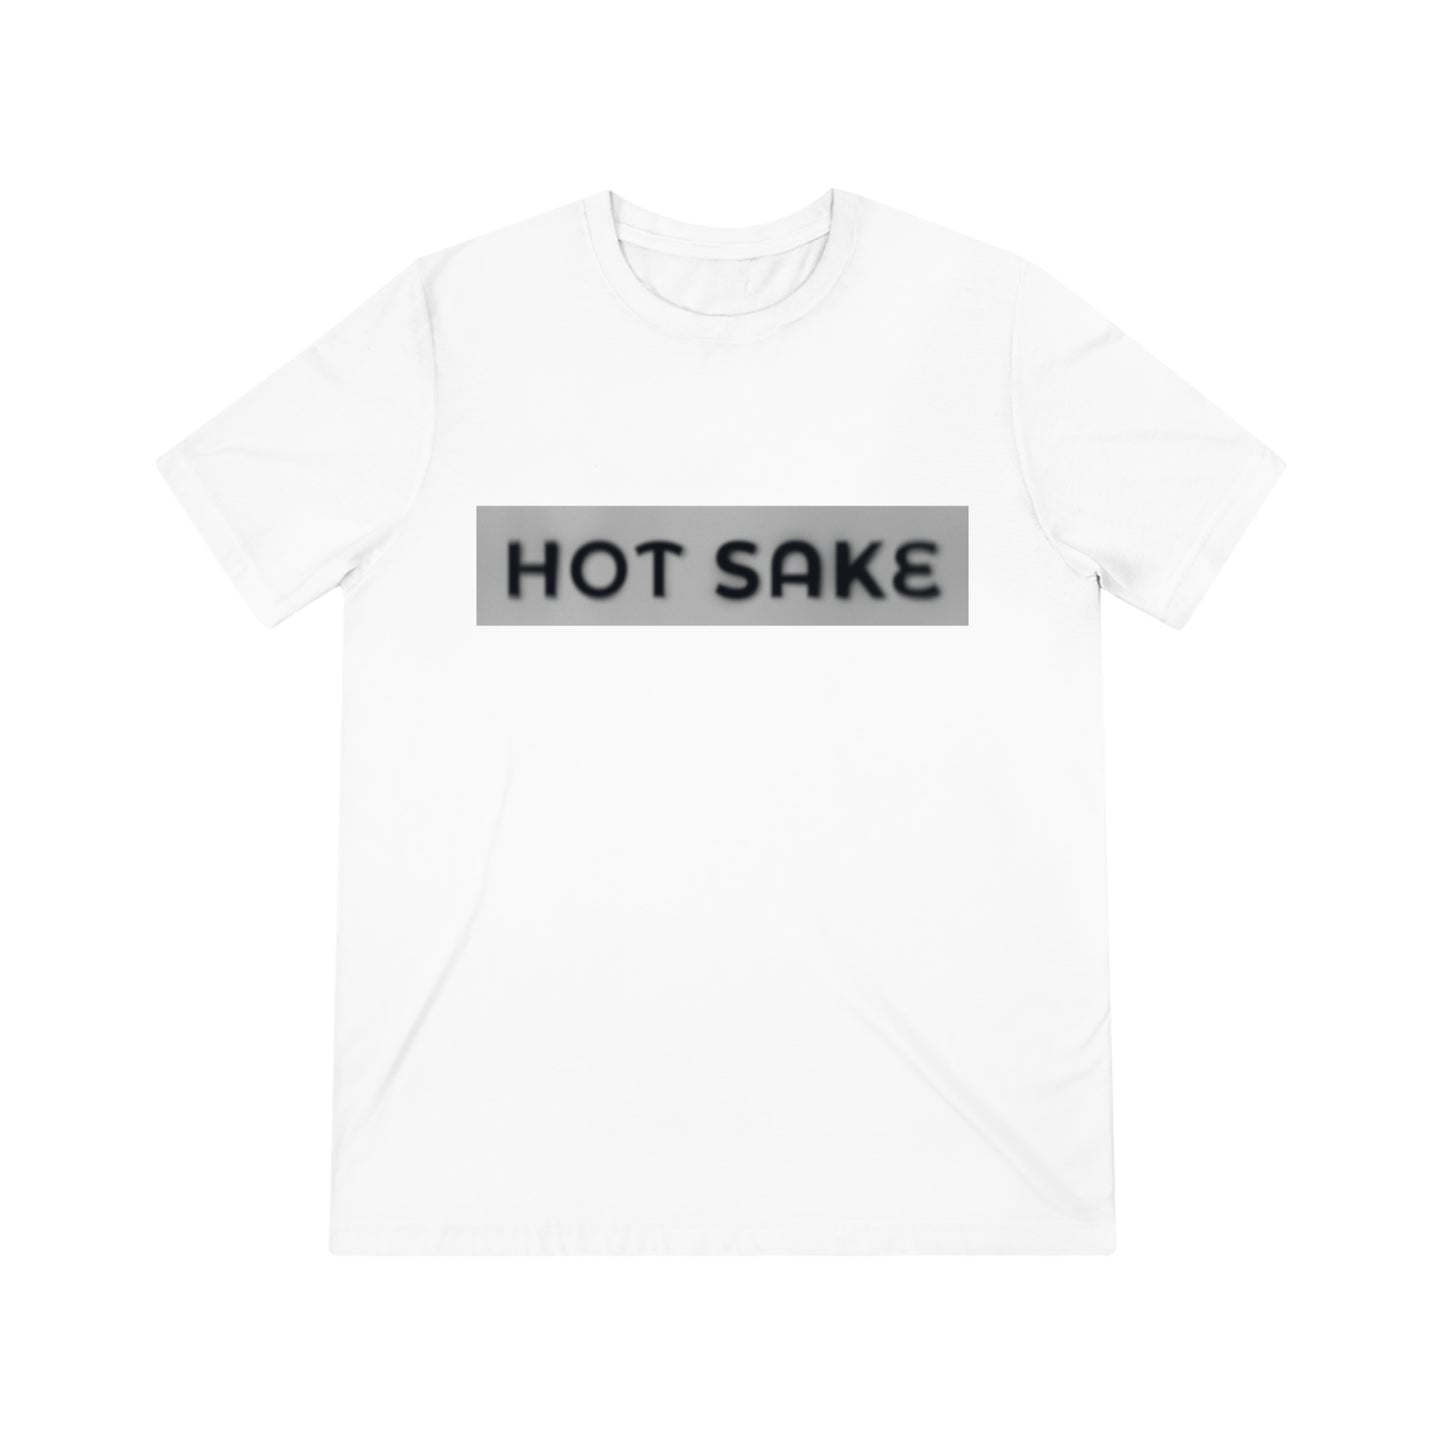 Hot Sake - T-Shirt